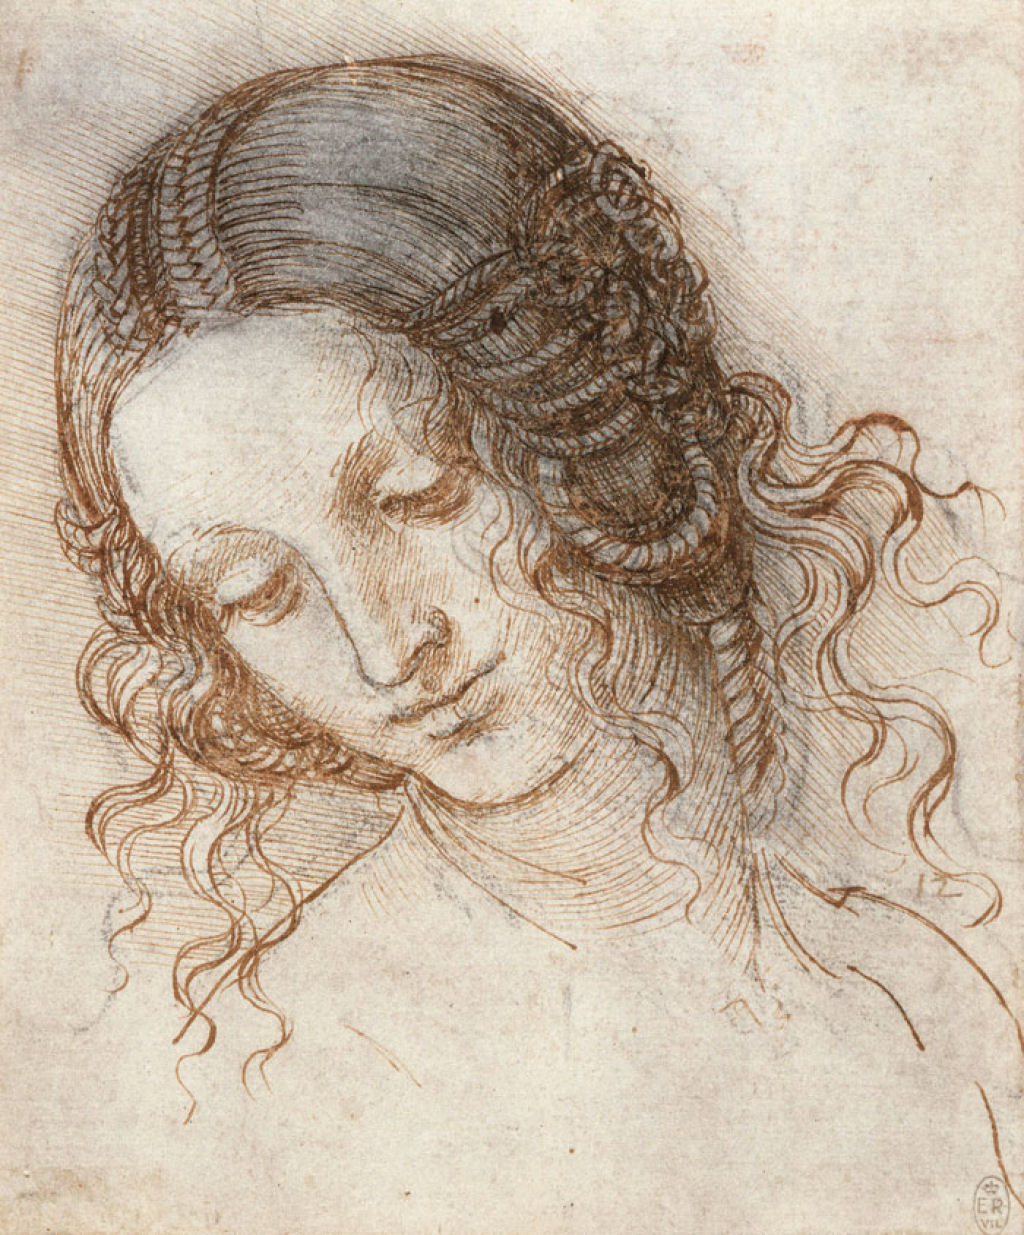 A beleza e simplicidade íntima das figuras femininas desenhadas por Leonardo da Vinci 05